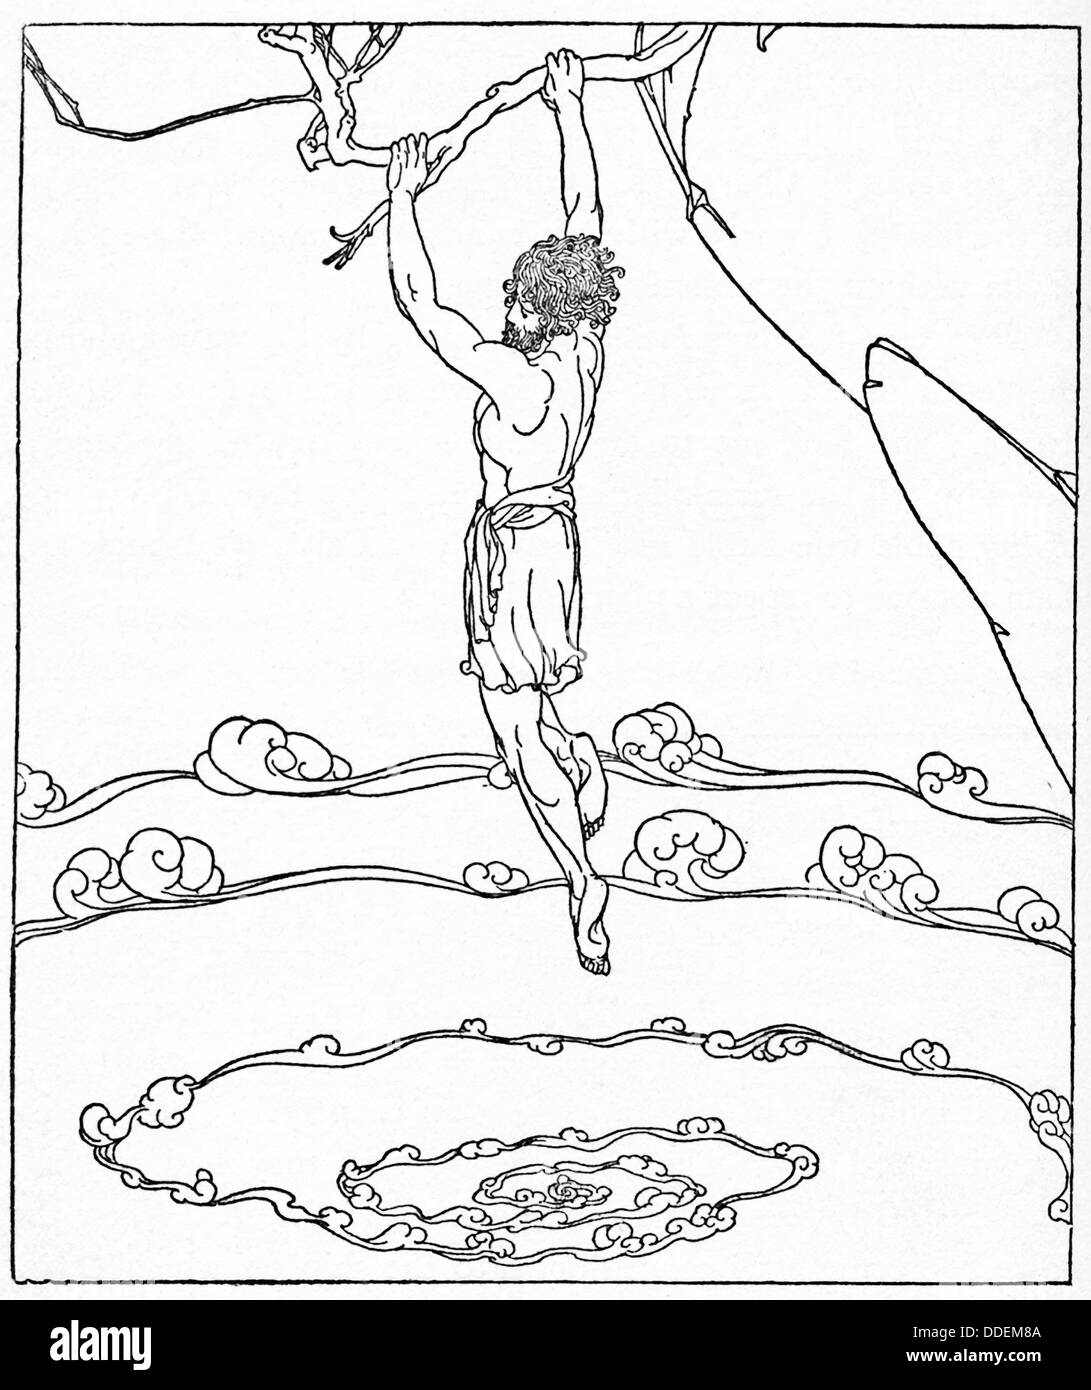 En 1918 cette illustration, le héros de la guerre de Troie grec Ulysse est montré la deuxième fois qu'il doit affronter le tourbillon Charybde. Banque D'Images